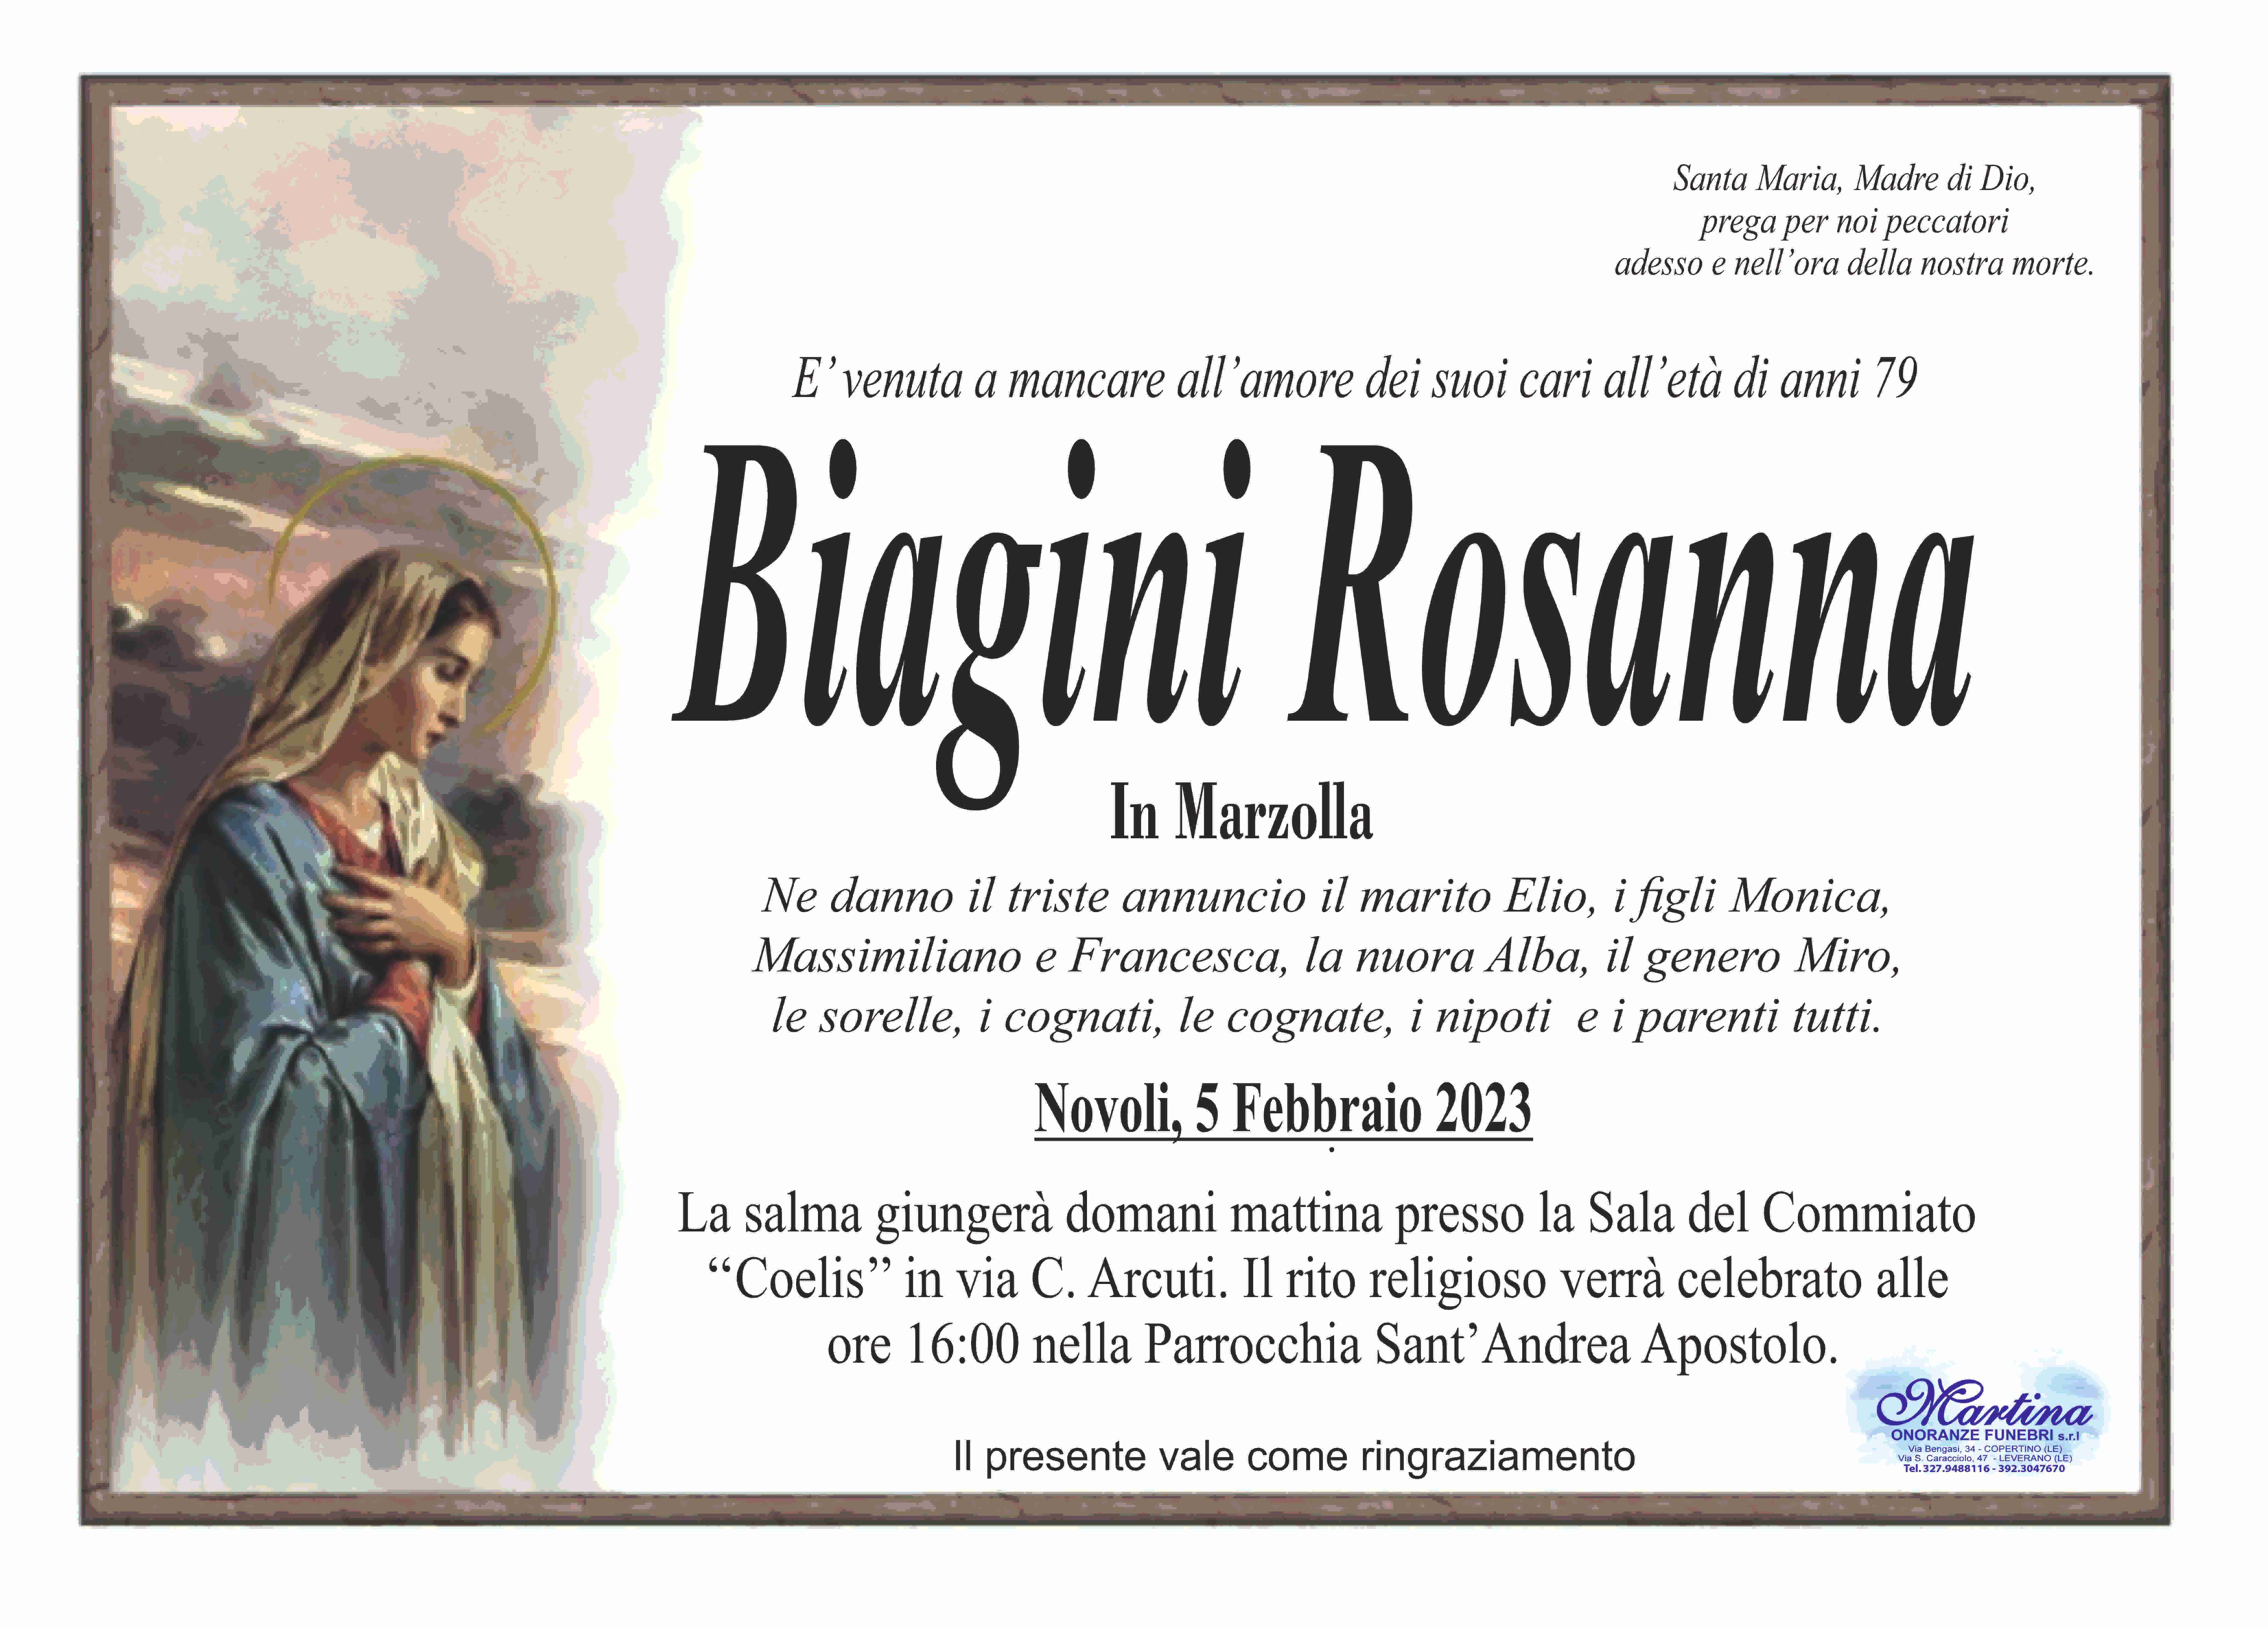 Rosanna Biagini